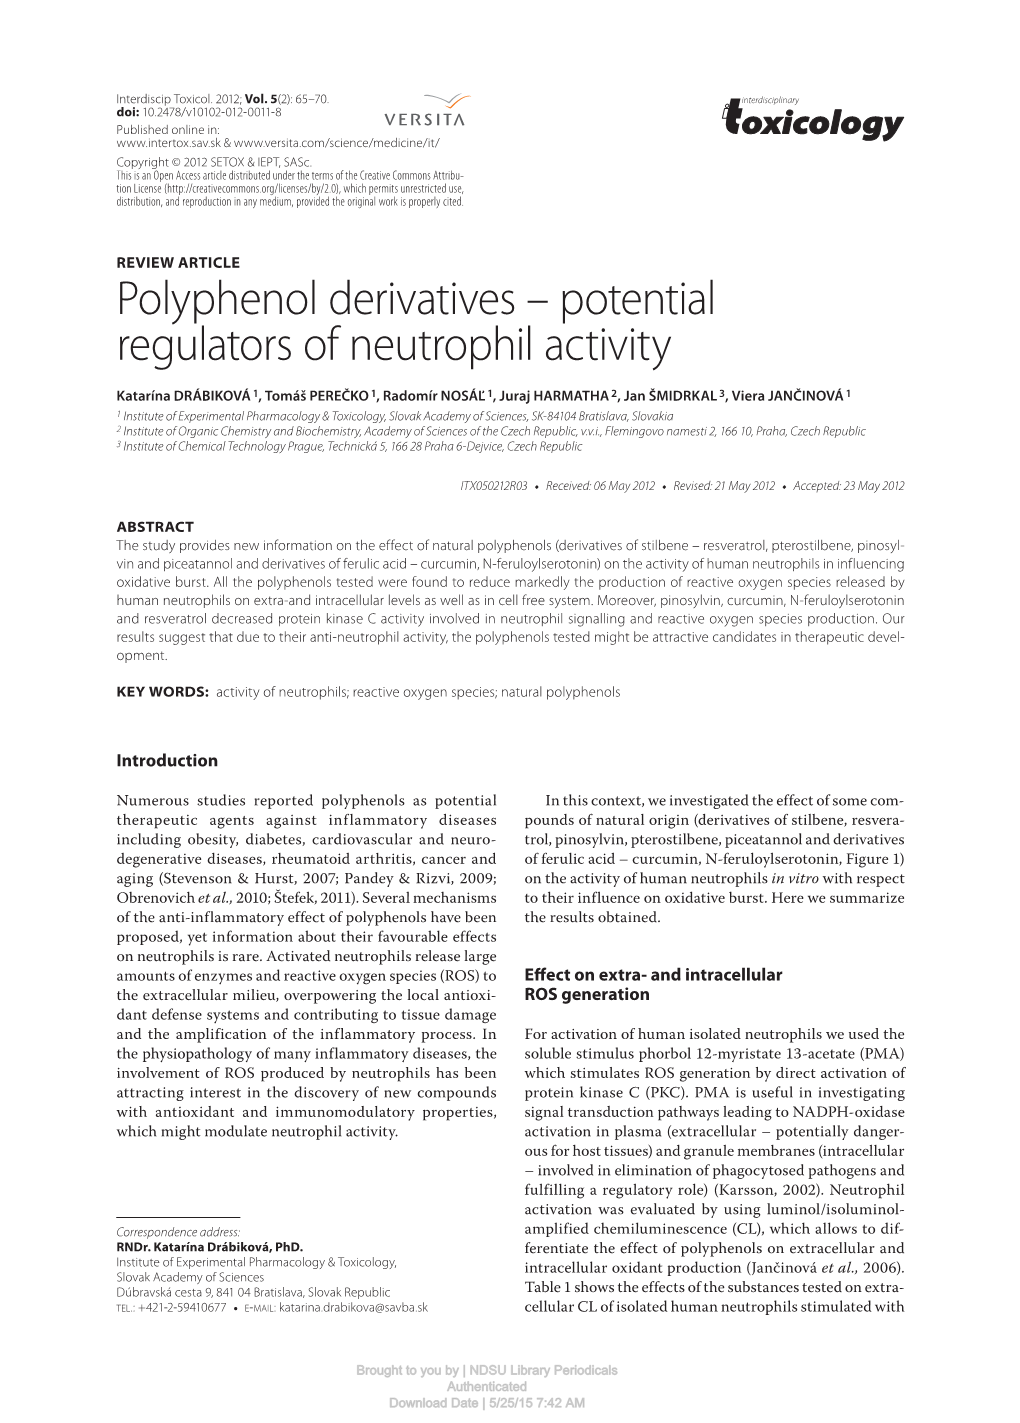 Potential Regulators of Neutrophil Activity